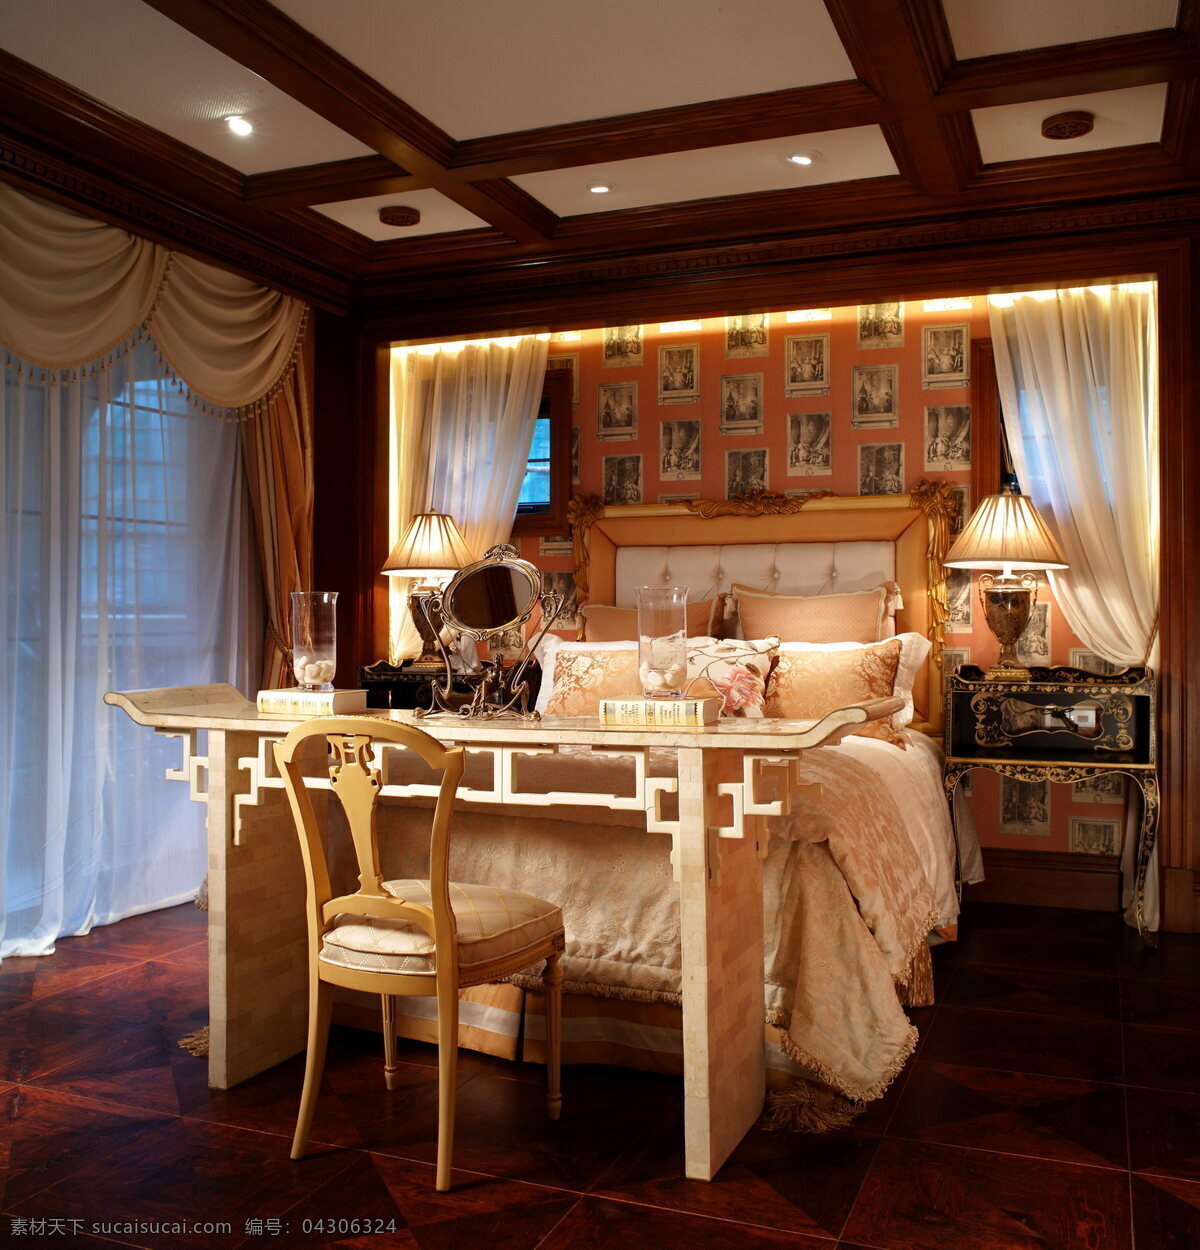 美式 复古 卧室 床 效果图 华丽装修 家装 软装 软装设计 设计效果图 室内 装修